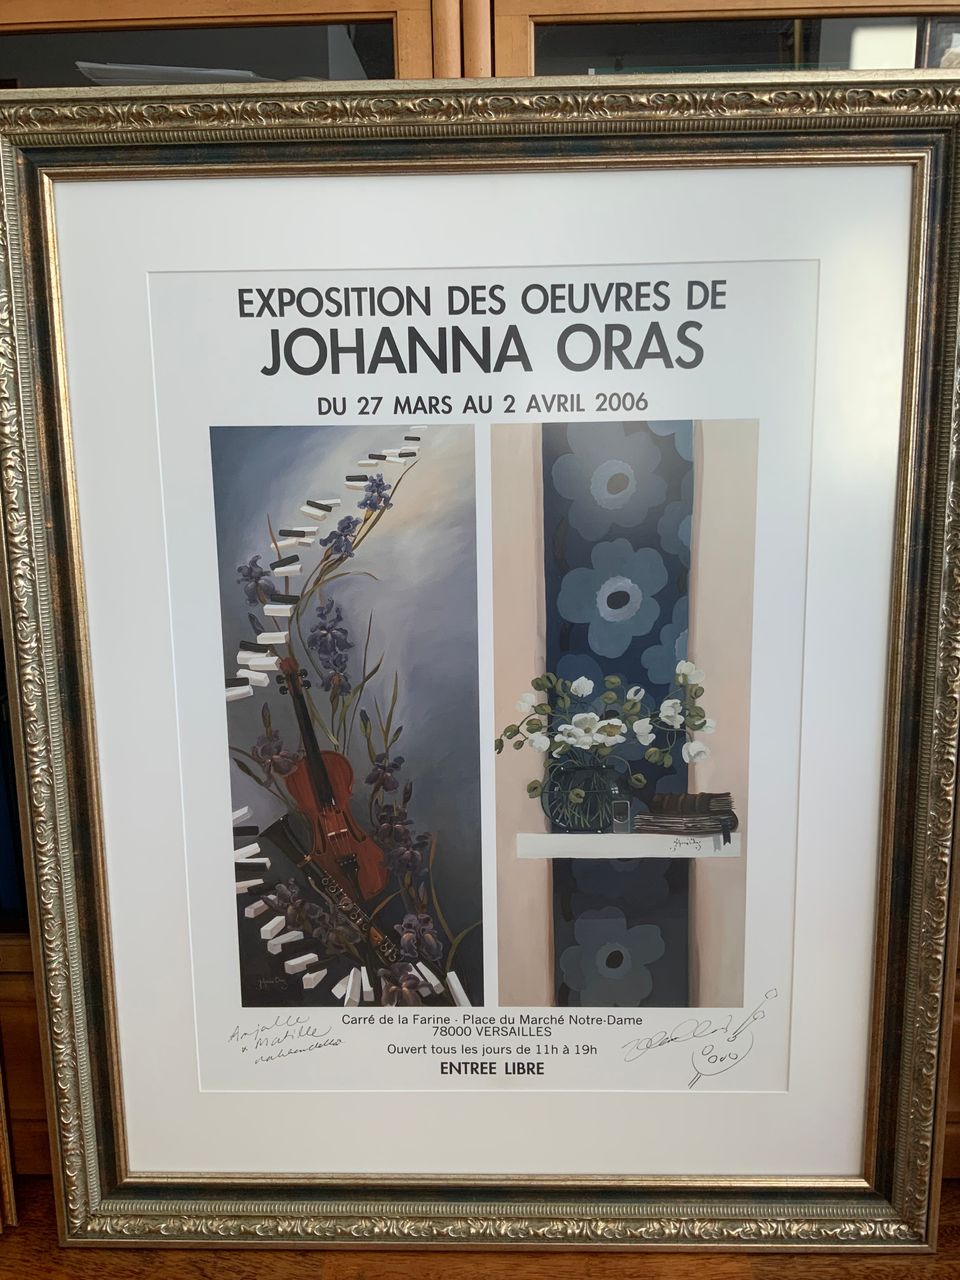 Johanna Oras näyttelyjuliste kehystettynä